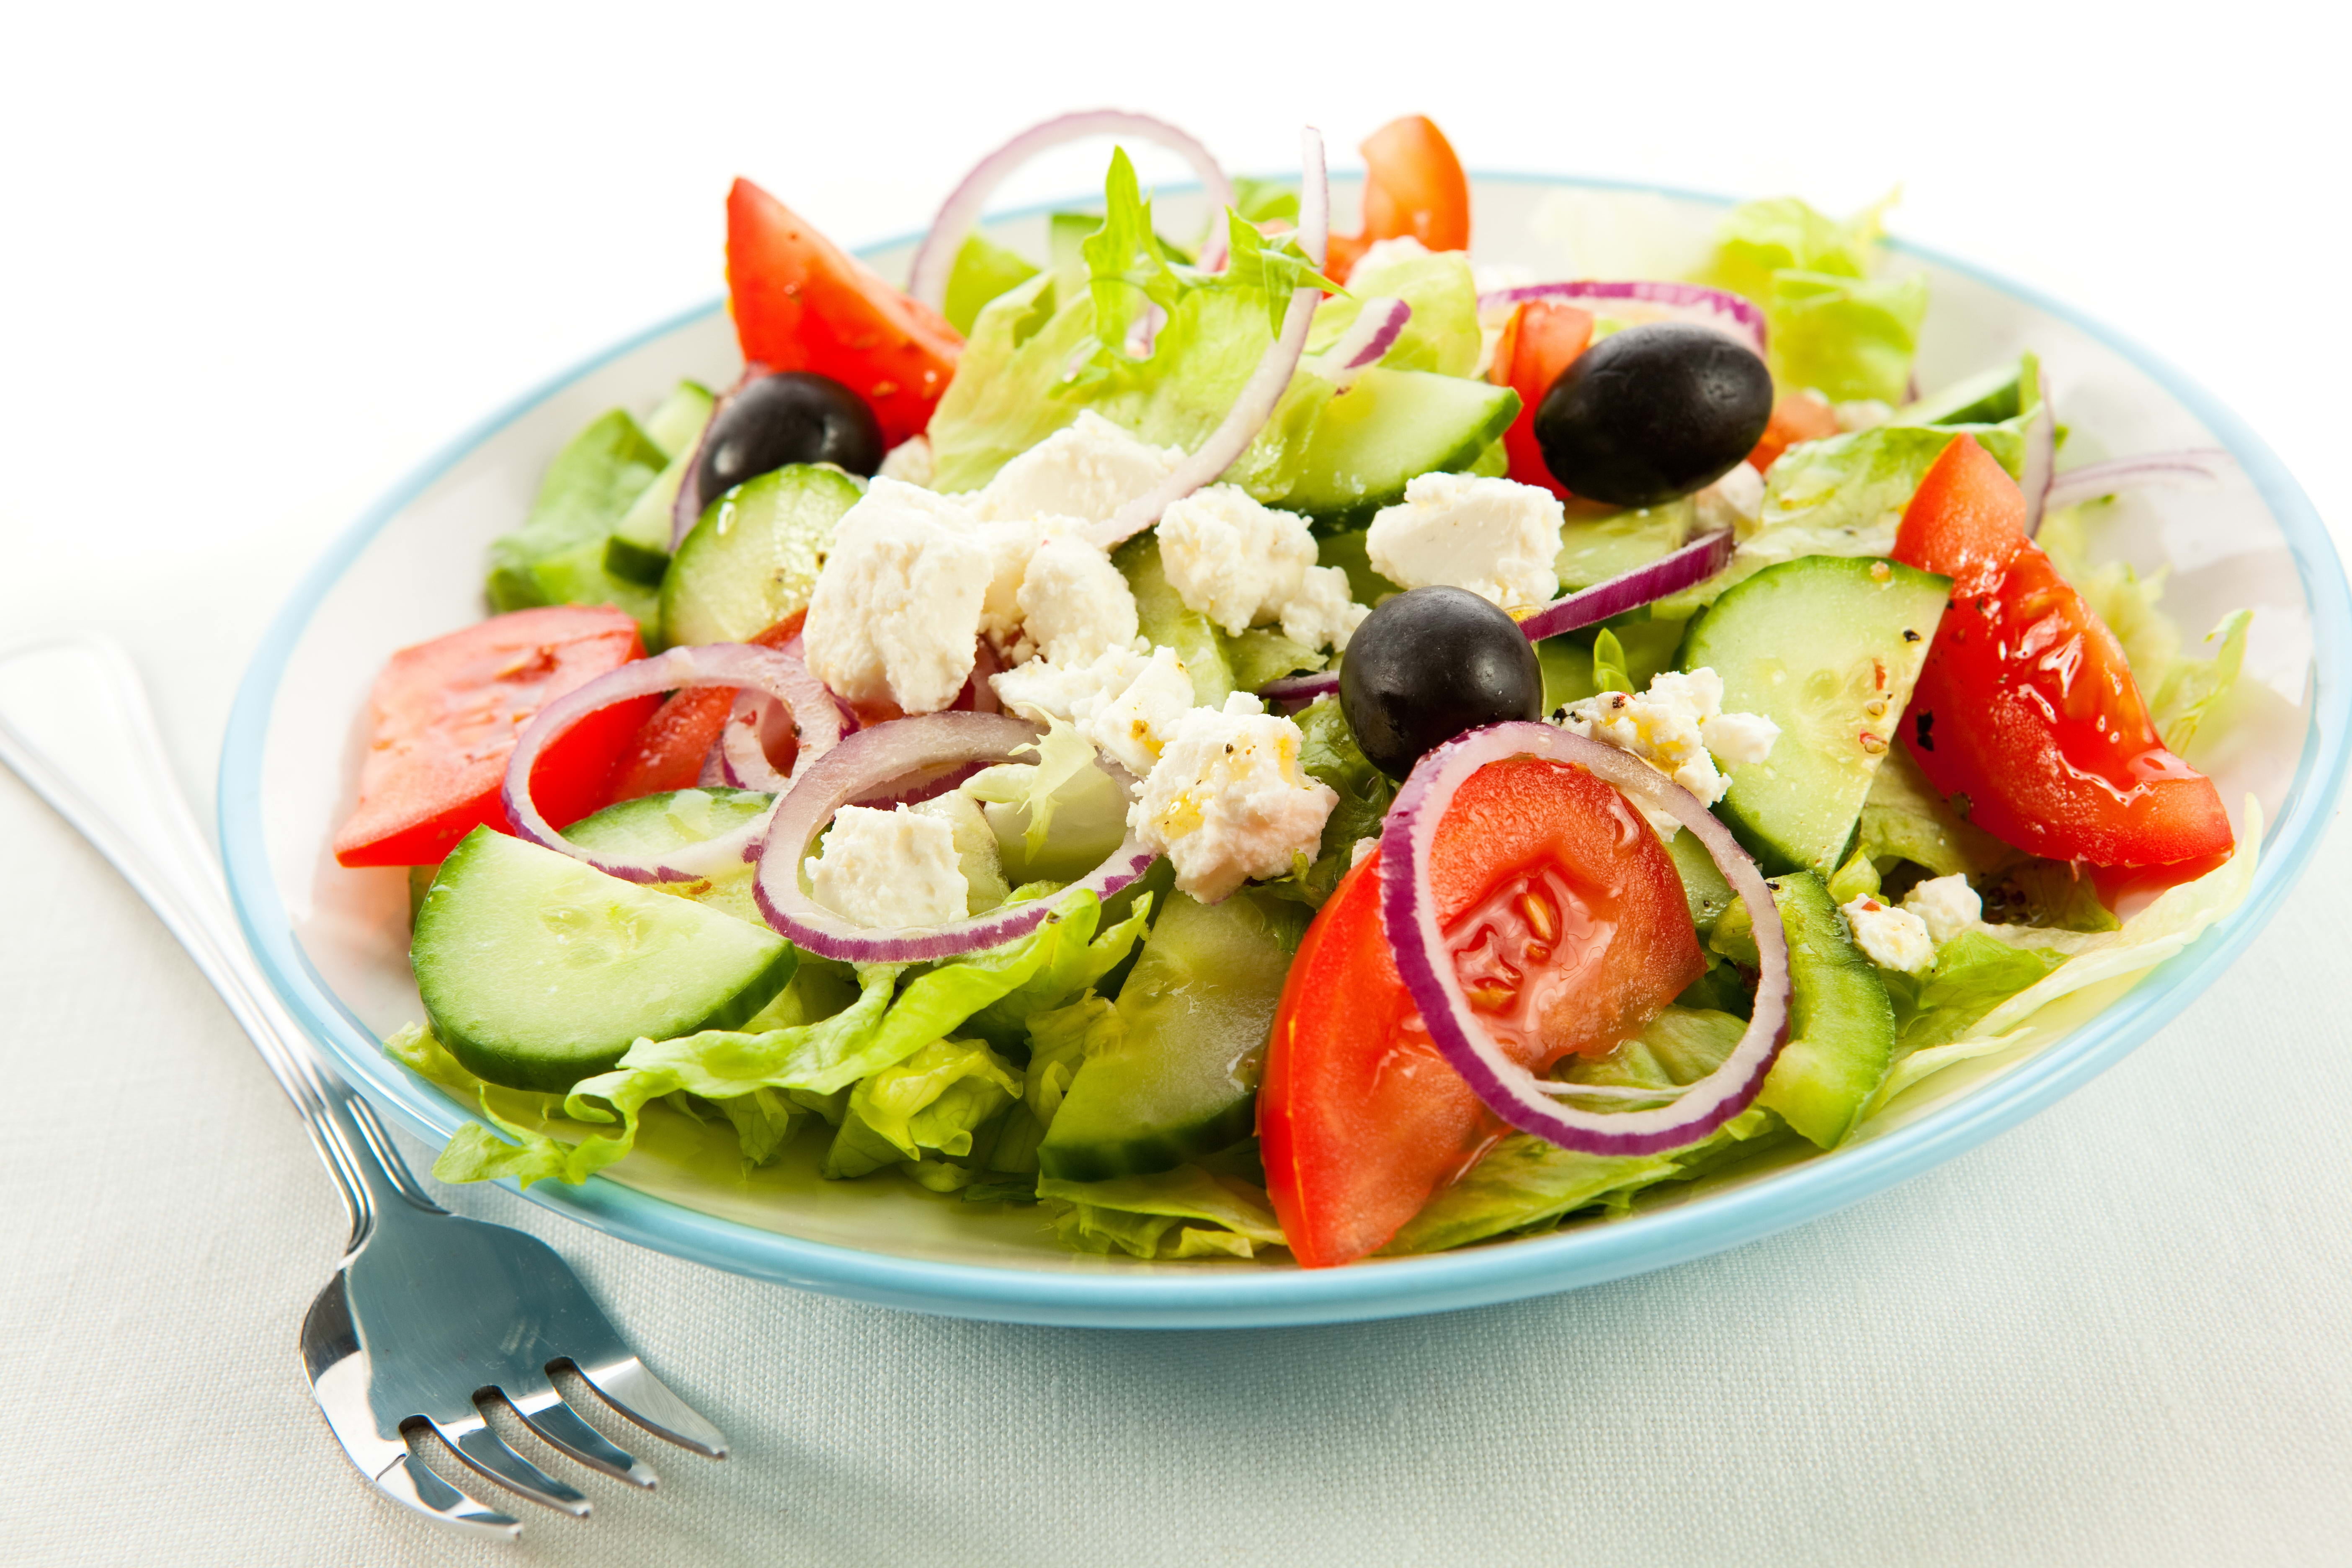 sliced tomato salad, olives, plate, fork, food, vegetable, lettuce